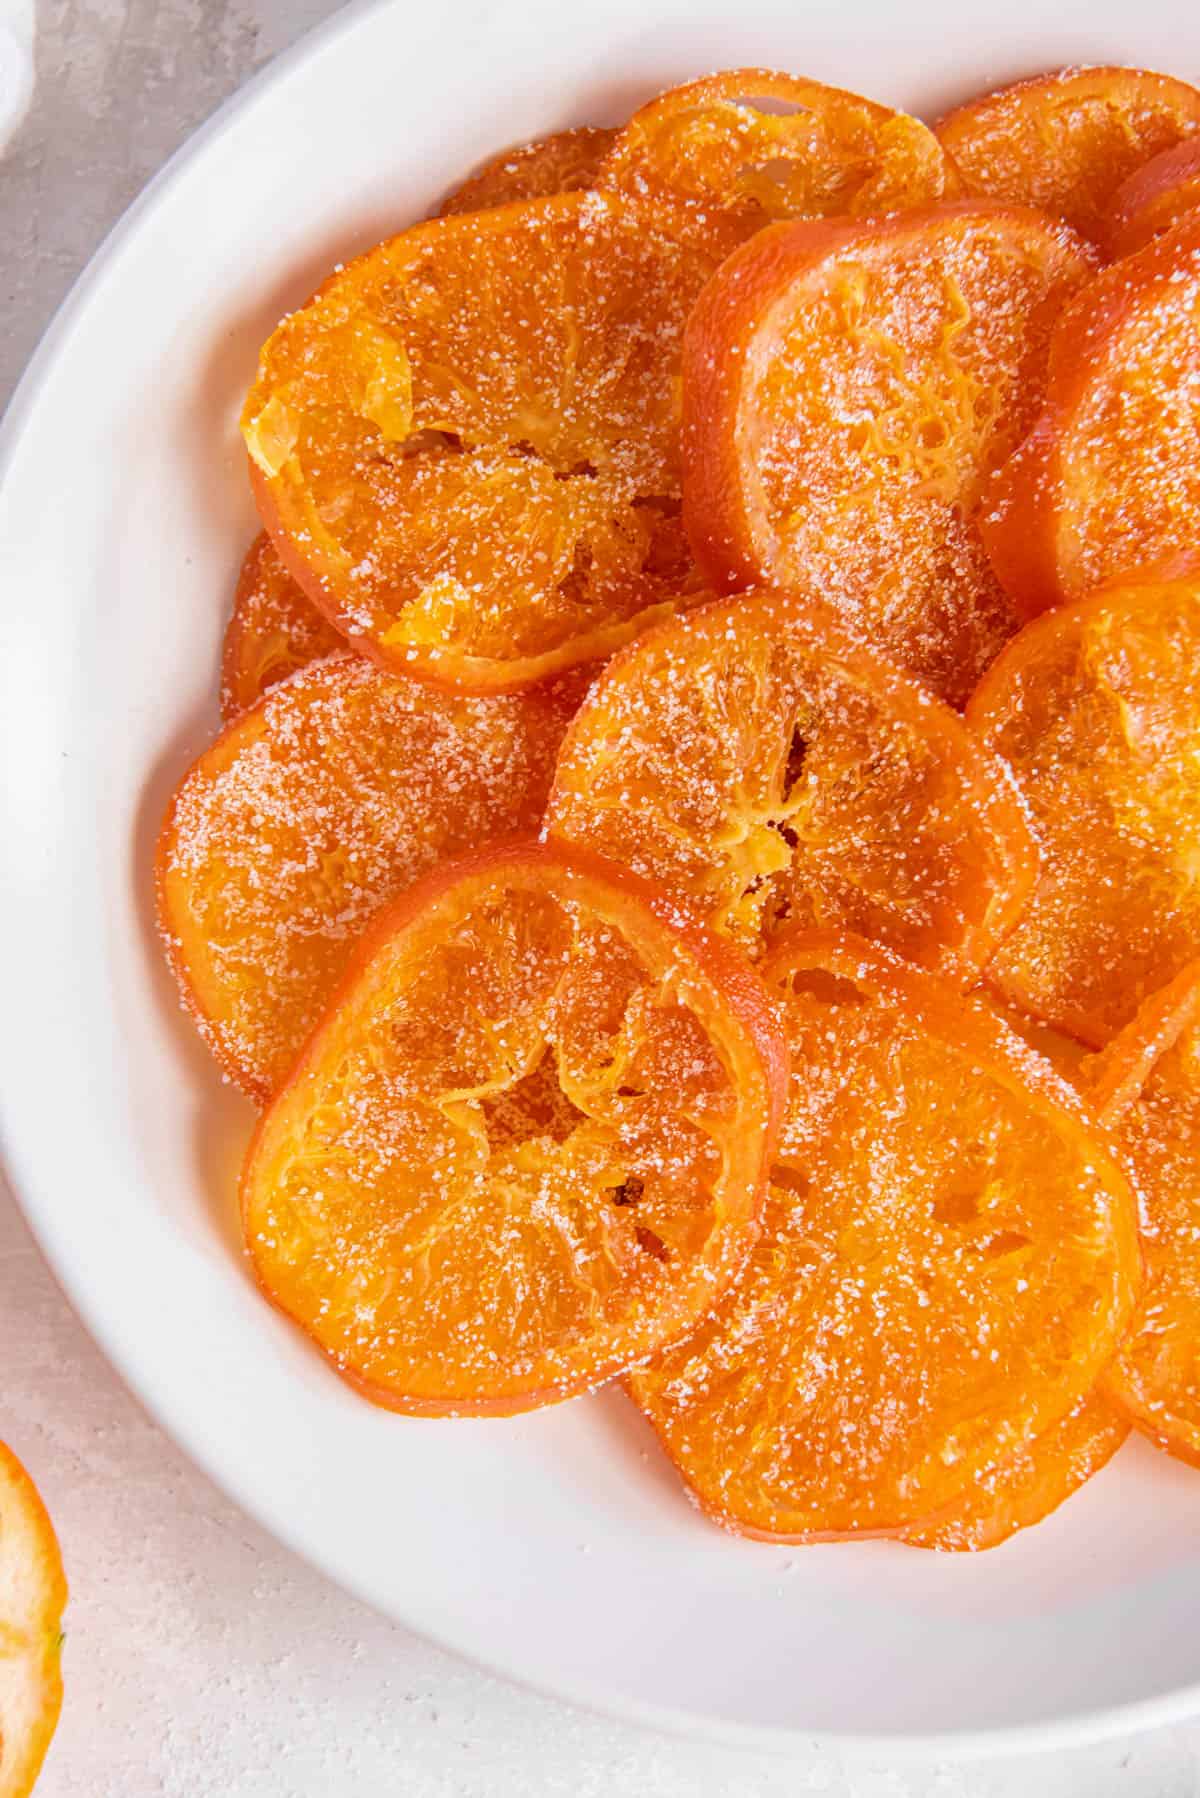 Tranches d'orange confites empilées sur une assiette blanche en forme de cercle.